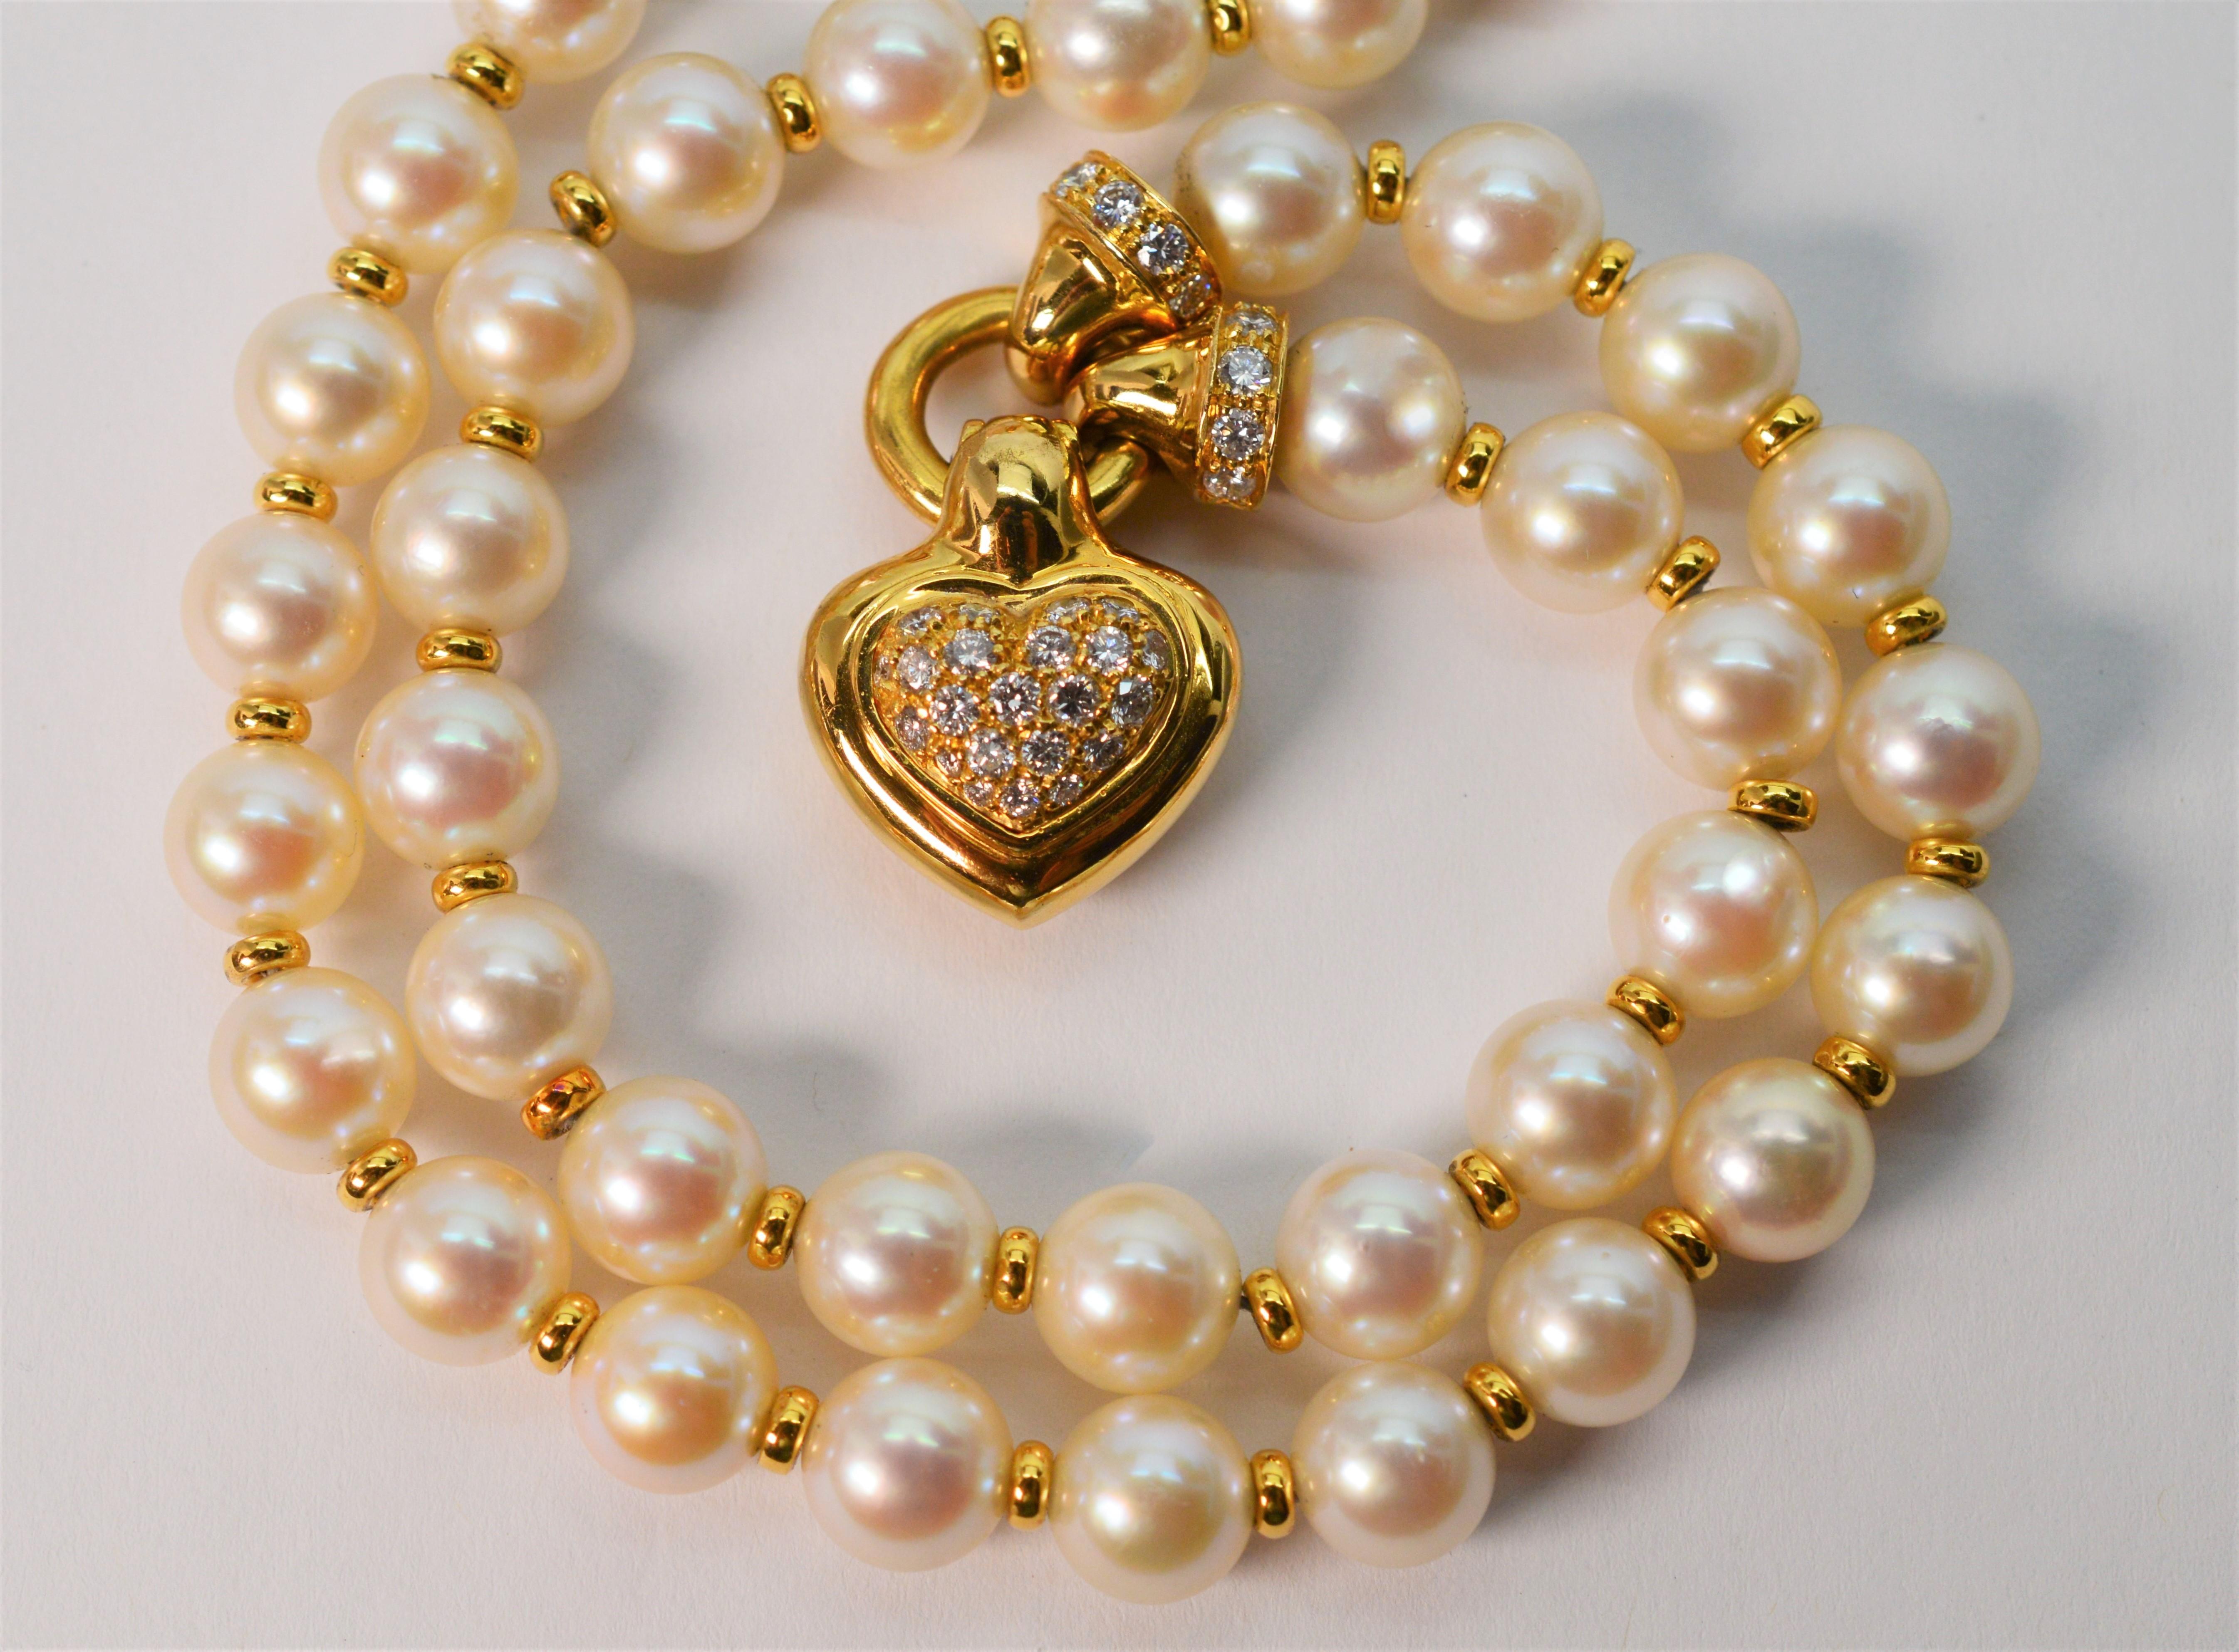 Die Verbindung klassischer Elemente macht diese schöne Perlen-Diamant-Herzanhänger-Halskette vielseitig einsetzbar. Perfekt für besondere Anlässe in Kombination mit Ihren Lieblingsohrringen oder für einen koketten Glam-Look mit einem knackigen